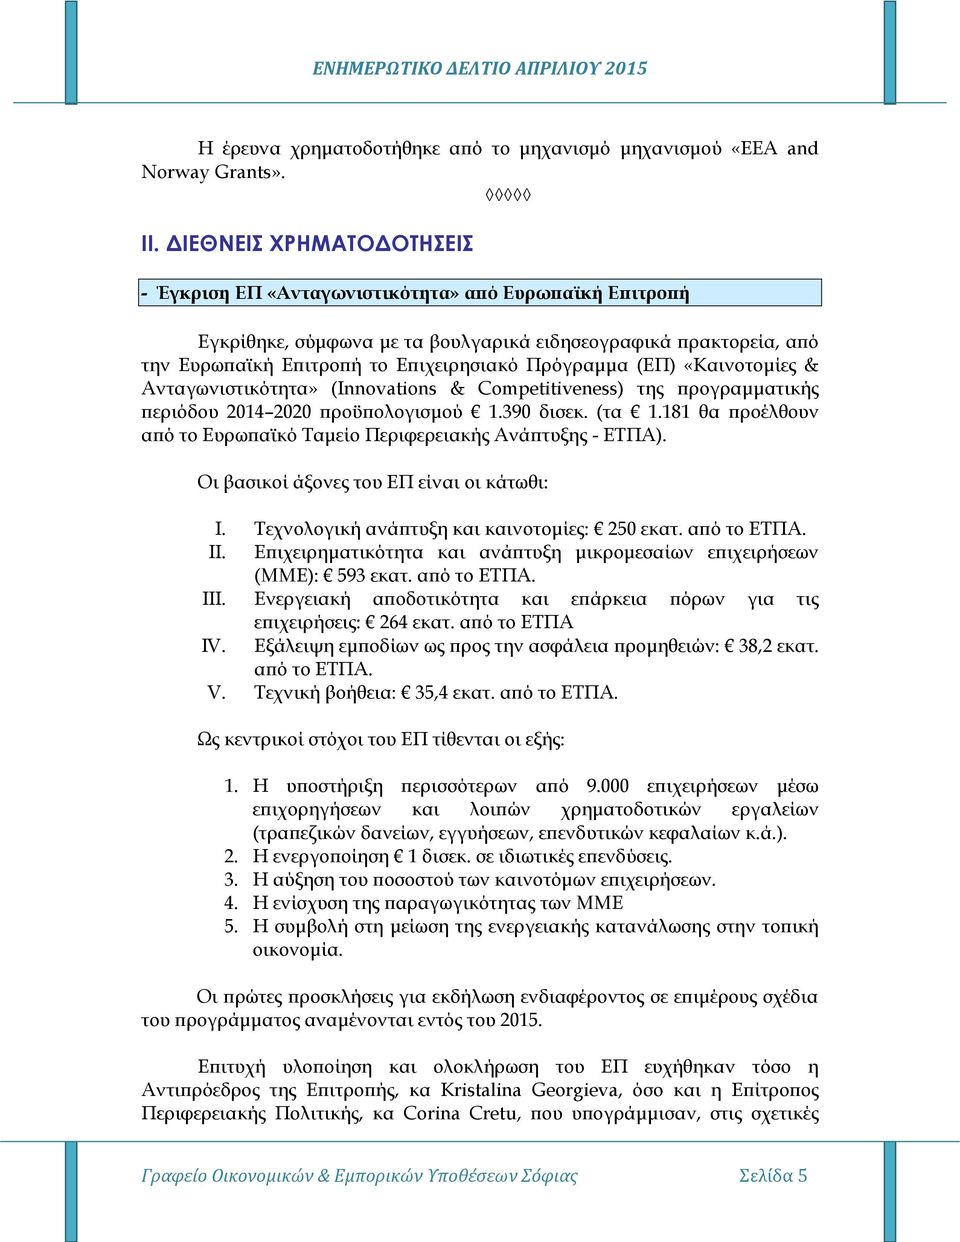 (ΕΠ) «Καινοτομίες & Ανταγωνιστικότητα» (Innovations & Competitiveness) της προγραμματικής περιόδου 2014 2020 προϋπολογισμού 1.390 δισεκ. (τα 1.